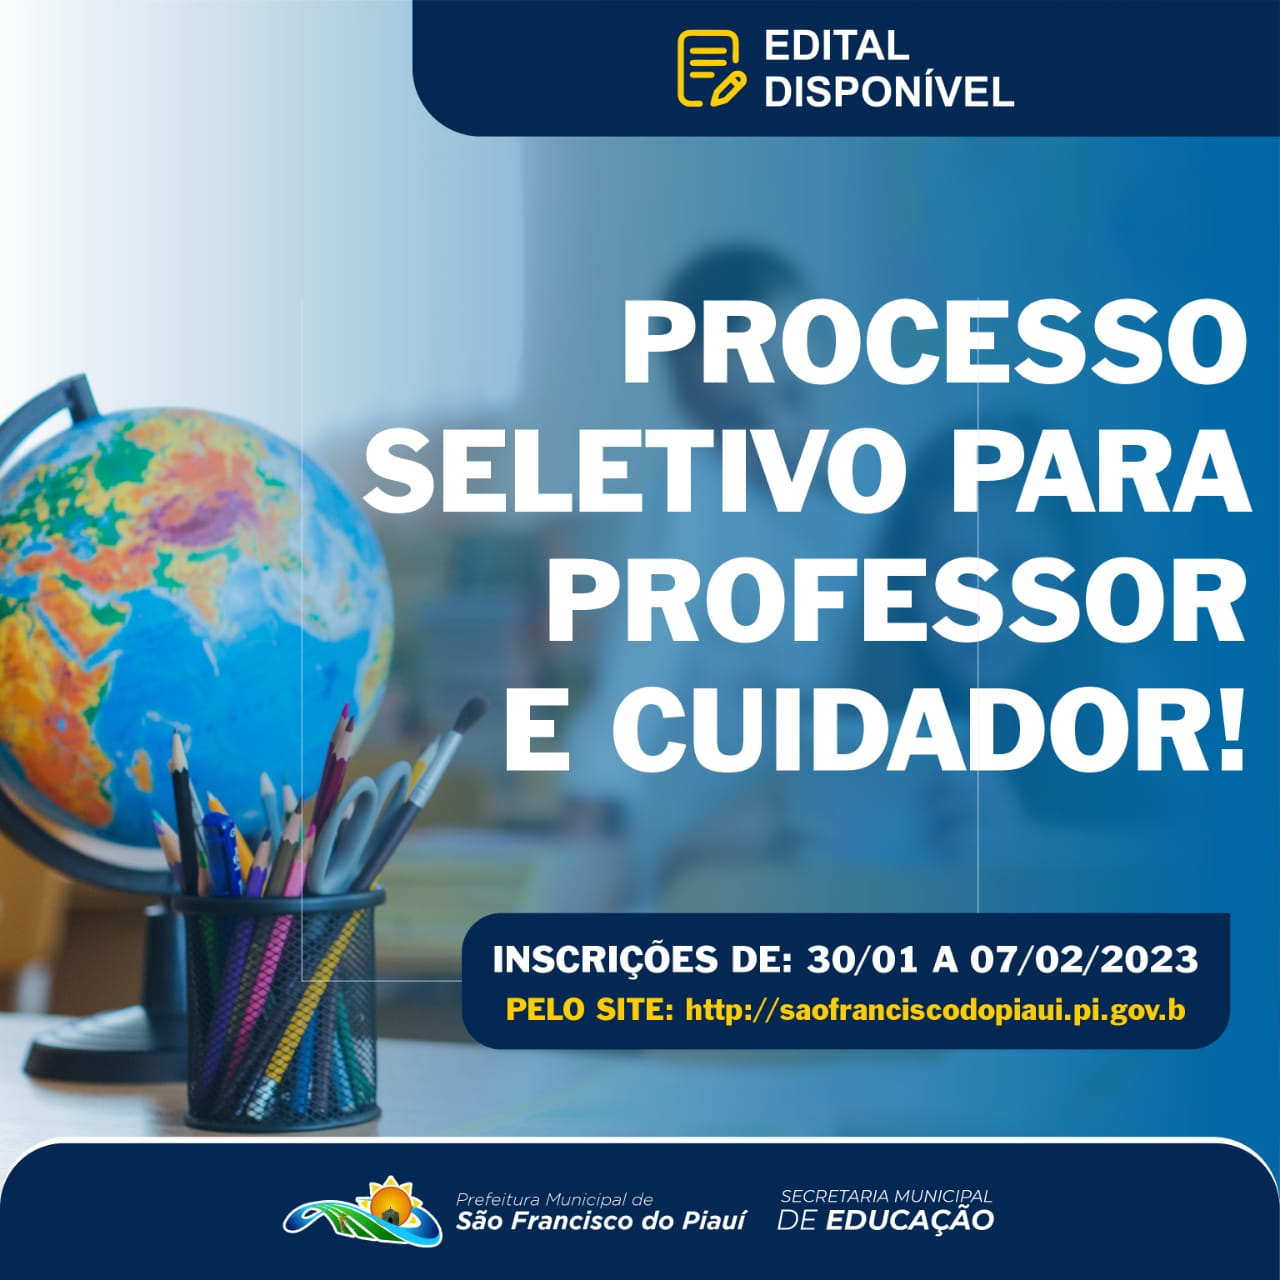  A Prefeitura Municipal de São Francisco do Piauí, por meio da Secretaria Municipal de Educação, abre inscrição para  processo seletivo